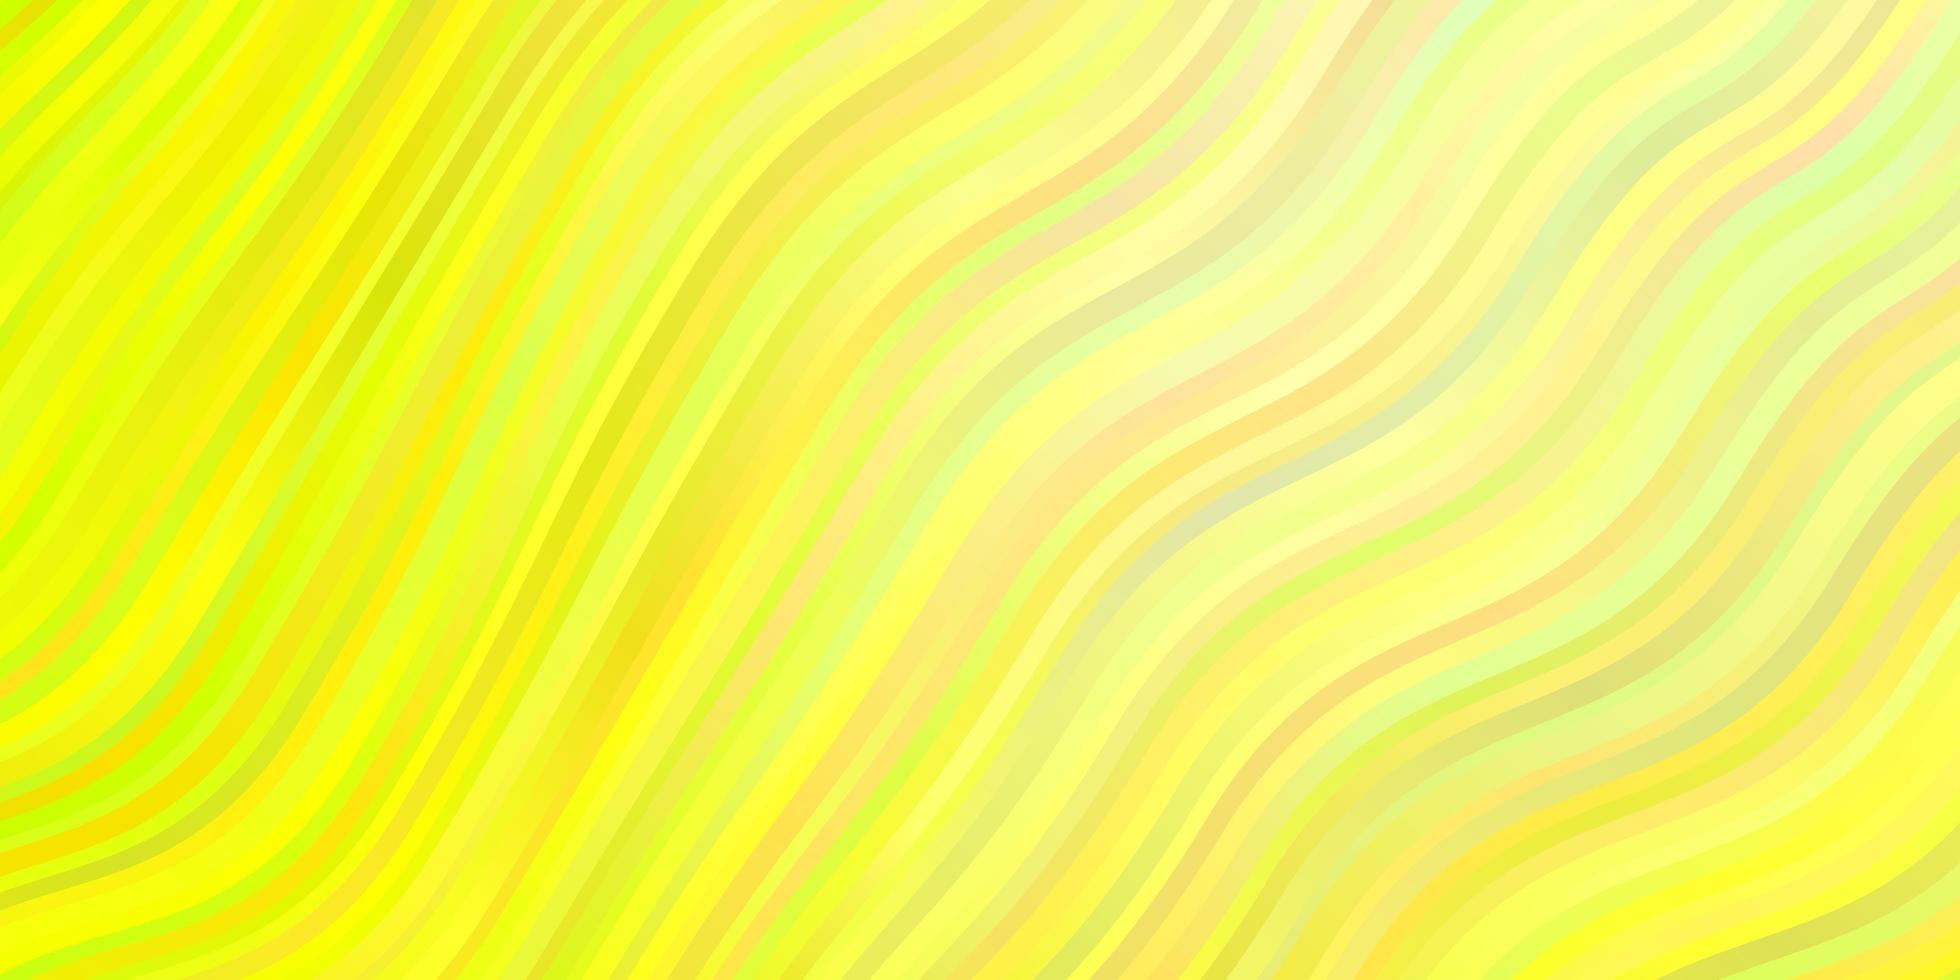 ljusgrön, gul vektorstruktur med cirkelbåge. vektor